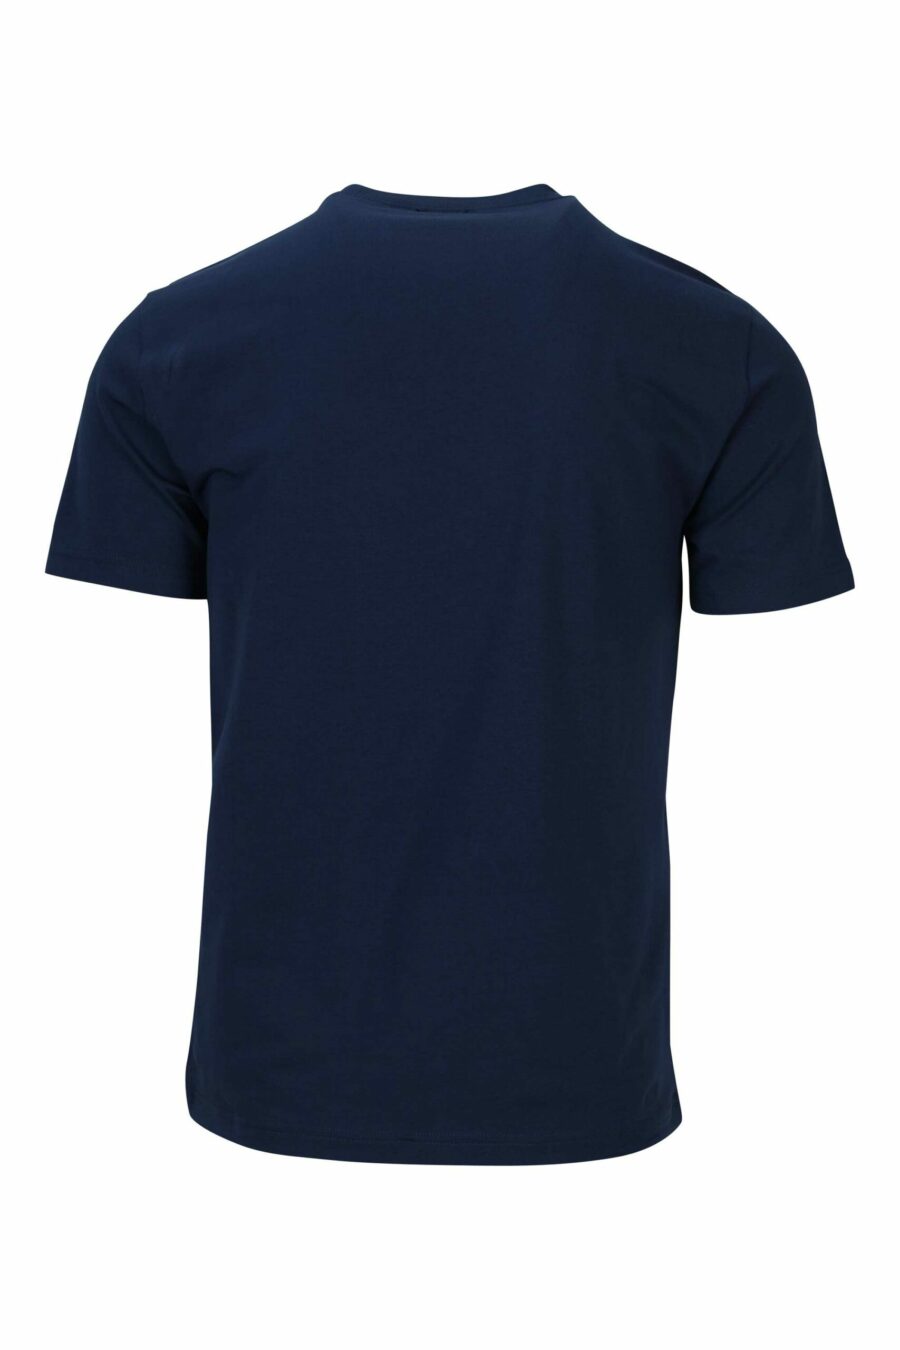 T-shirt azul escura com maxilogo "lux identity" em laranja néon - 8058947491445 1 à escala